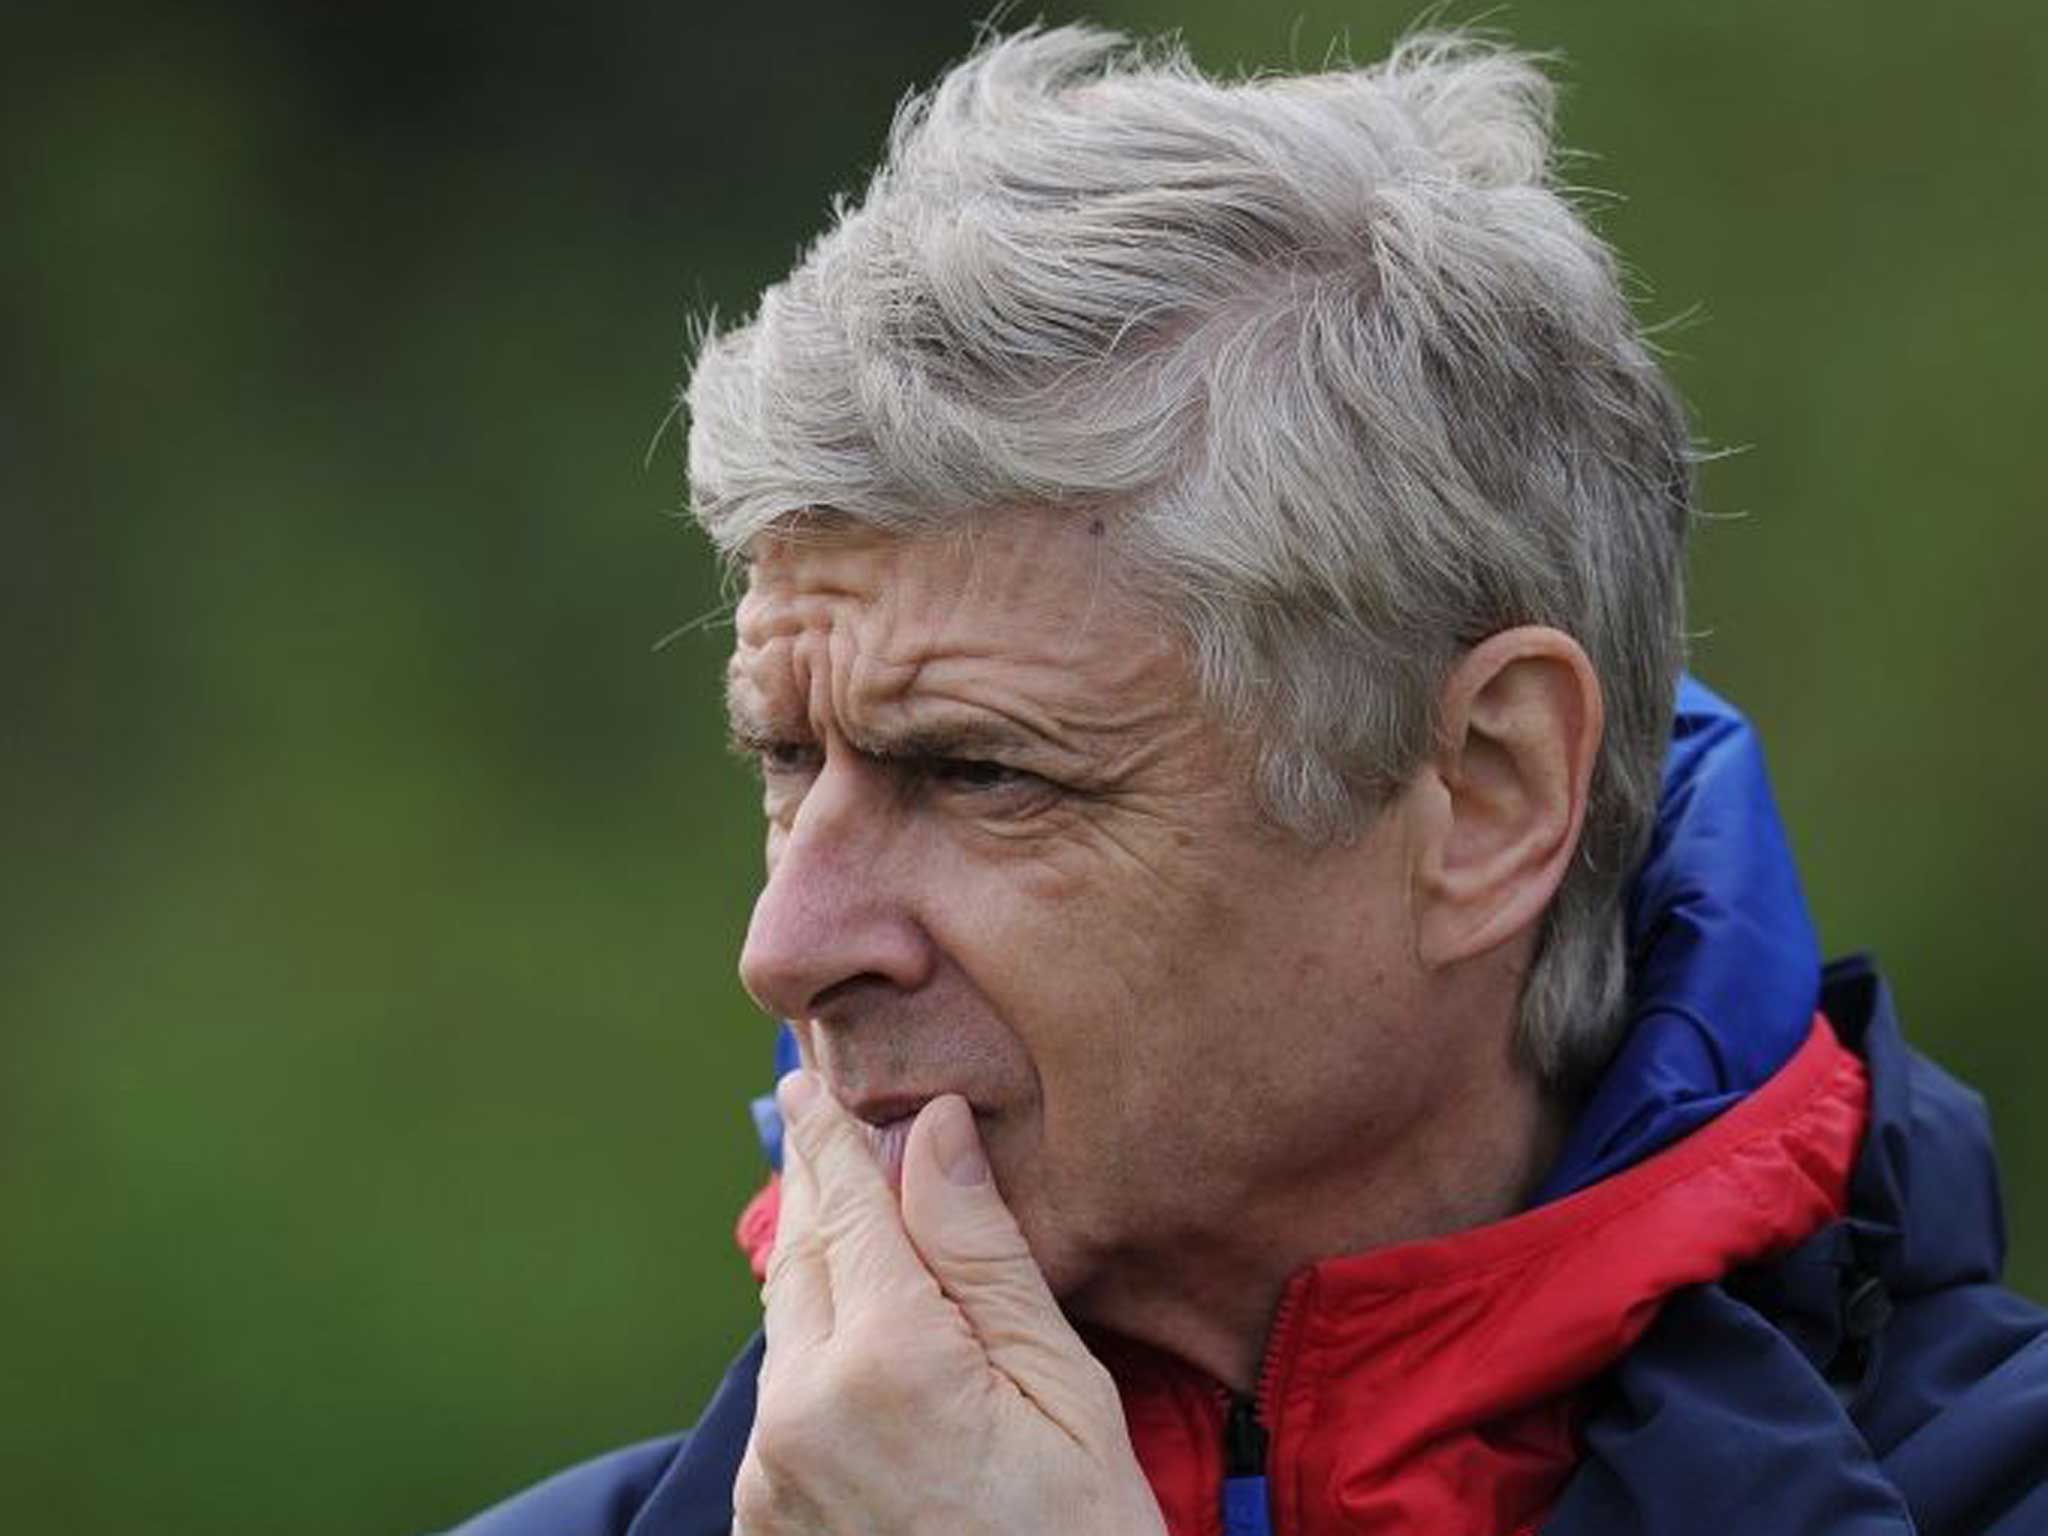 Arsene Wenger takes training with Arsenal